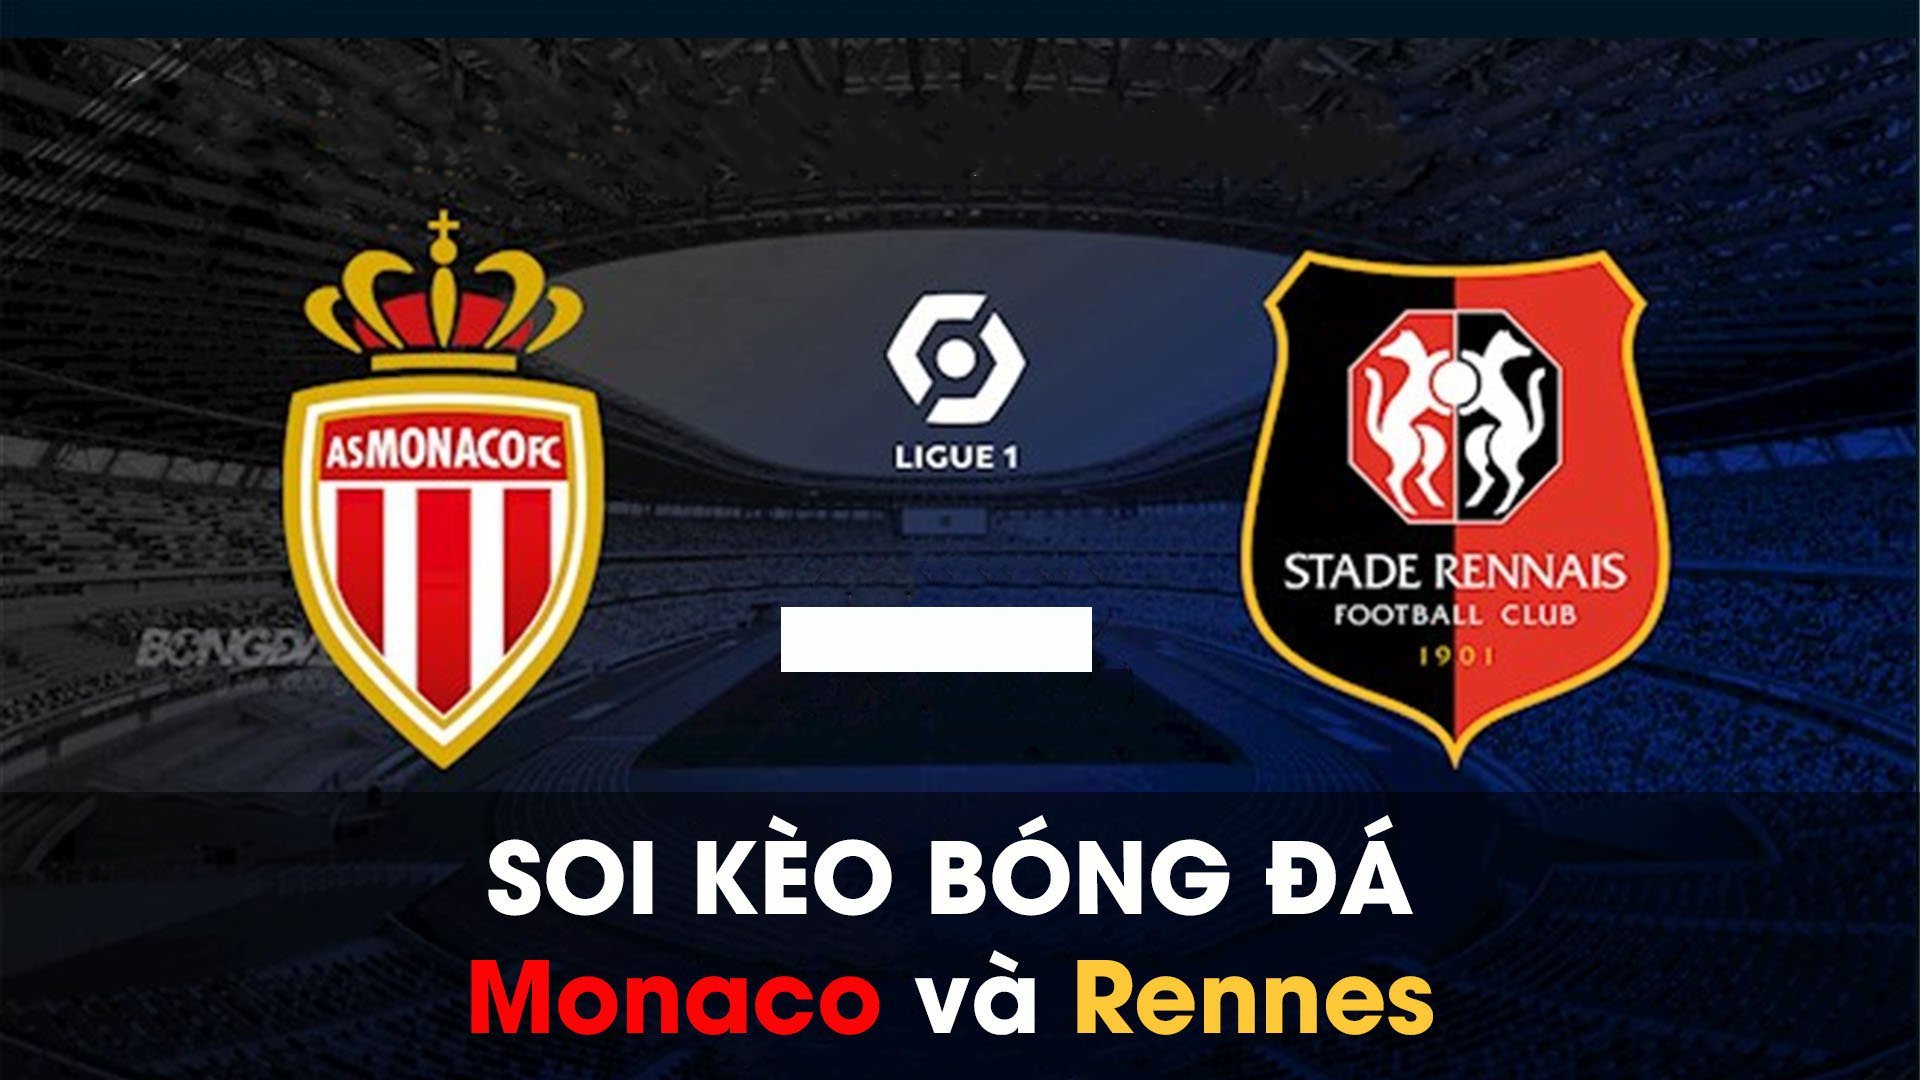 Soi kèo bóng đá giữa Monaco và Rennes 01